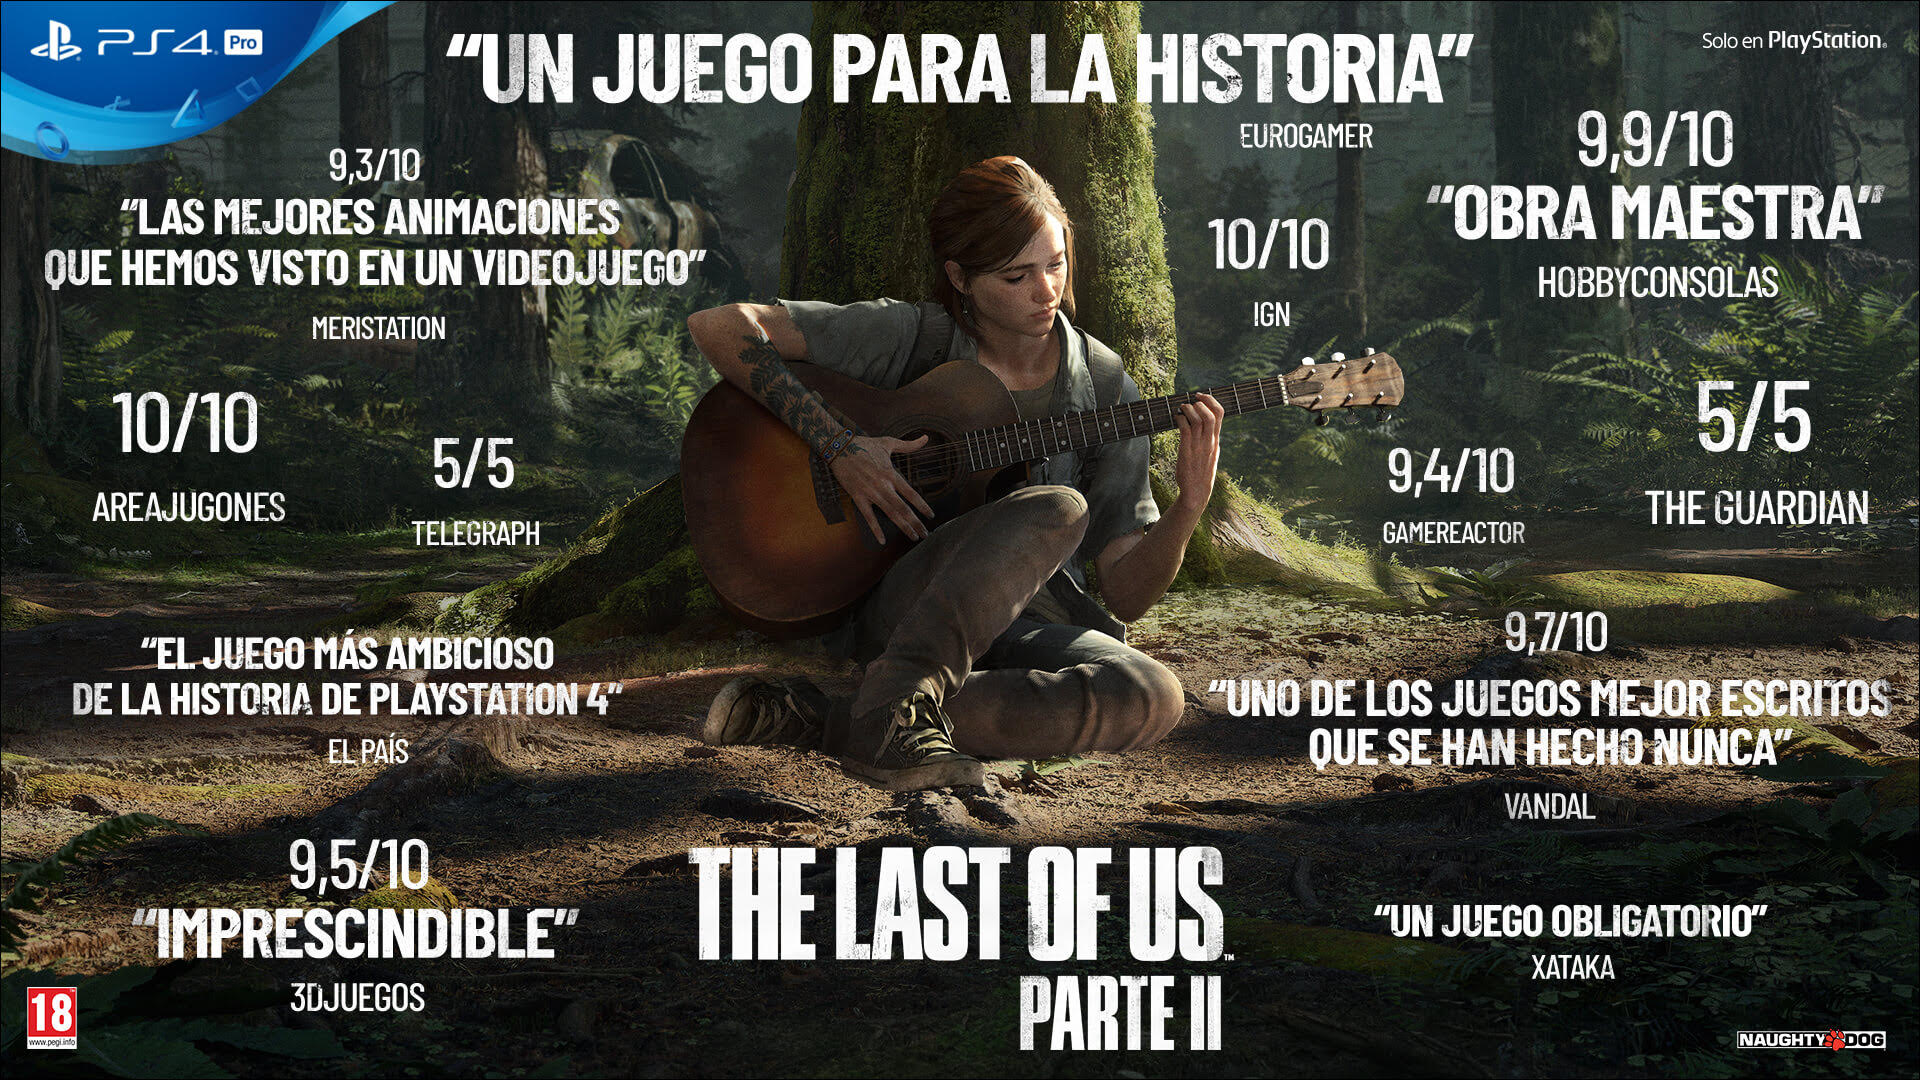 The Last of Us Parte II llega este viernes 19 de junio a PlayStation 4